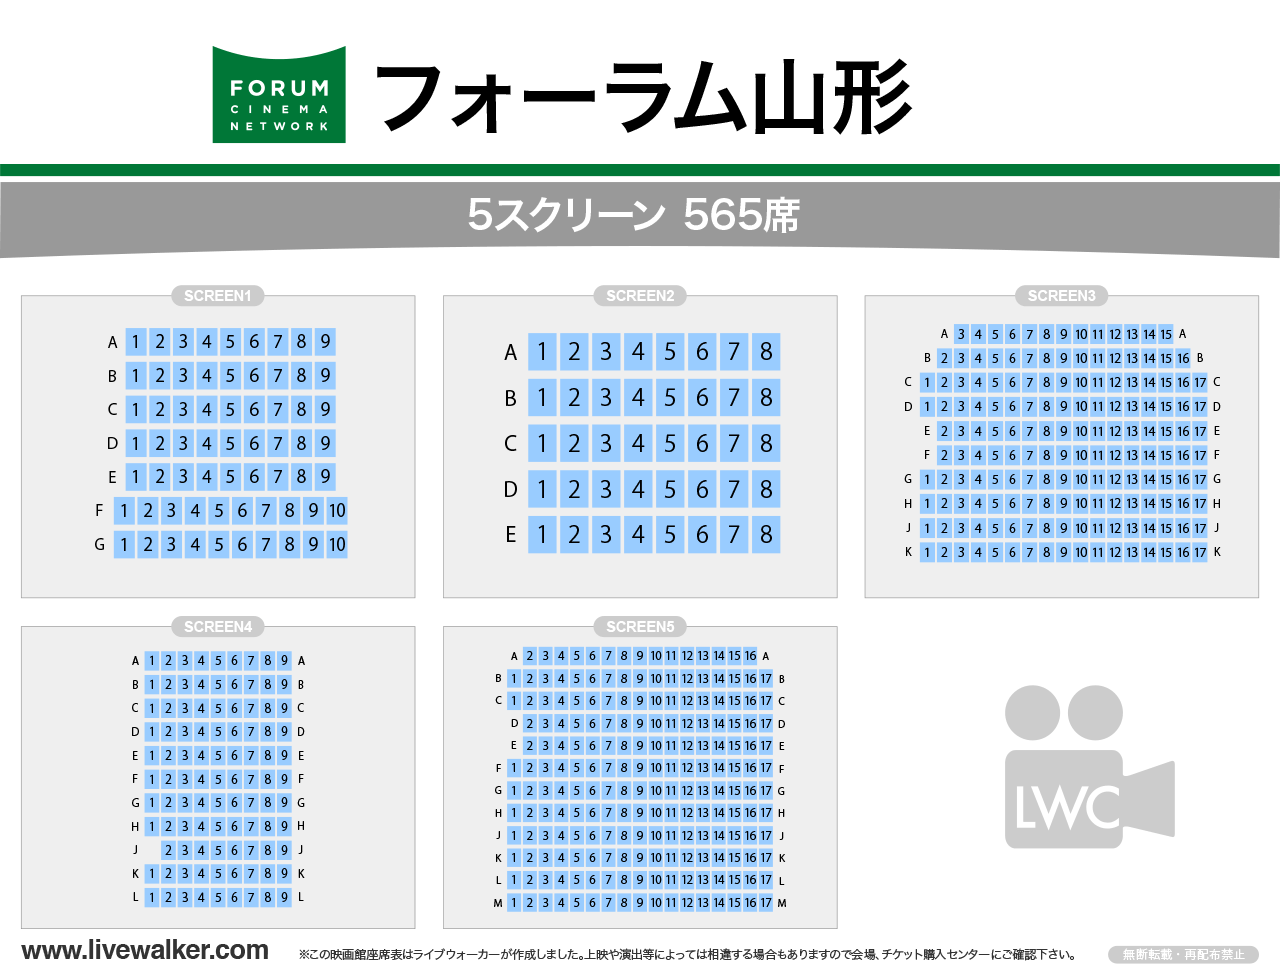 フォーラム山形シアターの座席表